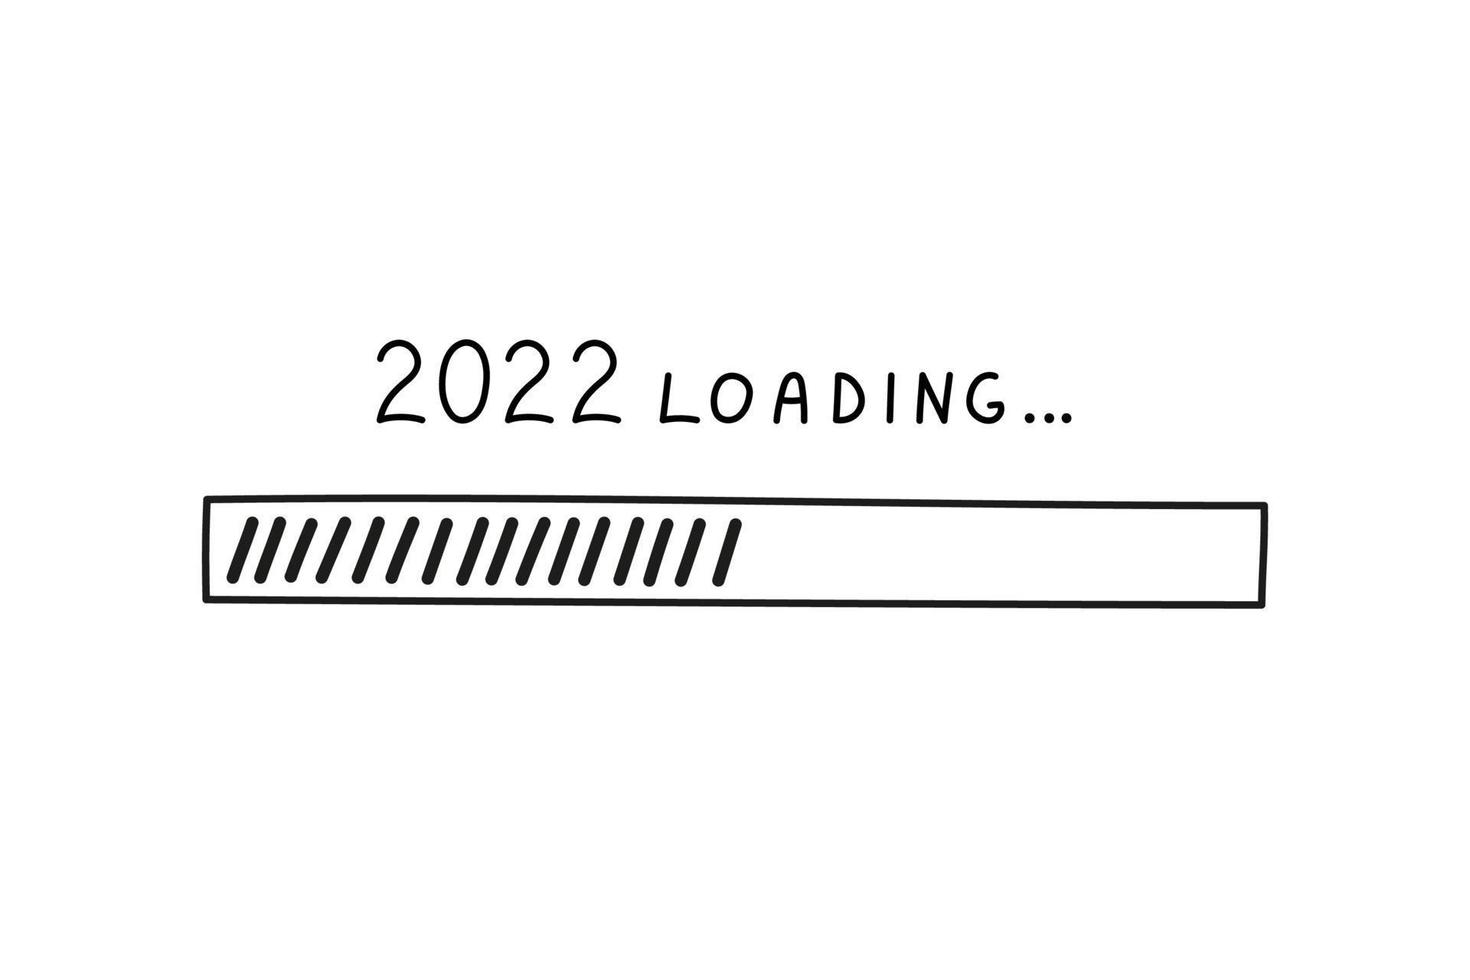 barra de progresso 2022 ano novo em estilo doodle, ilustração vetorial. símbolo de carregamento desenhado à mão, elemento isolado preto sobre um fundo branco. barra de carga de esboço vetor